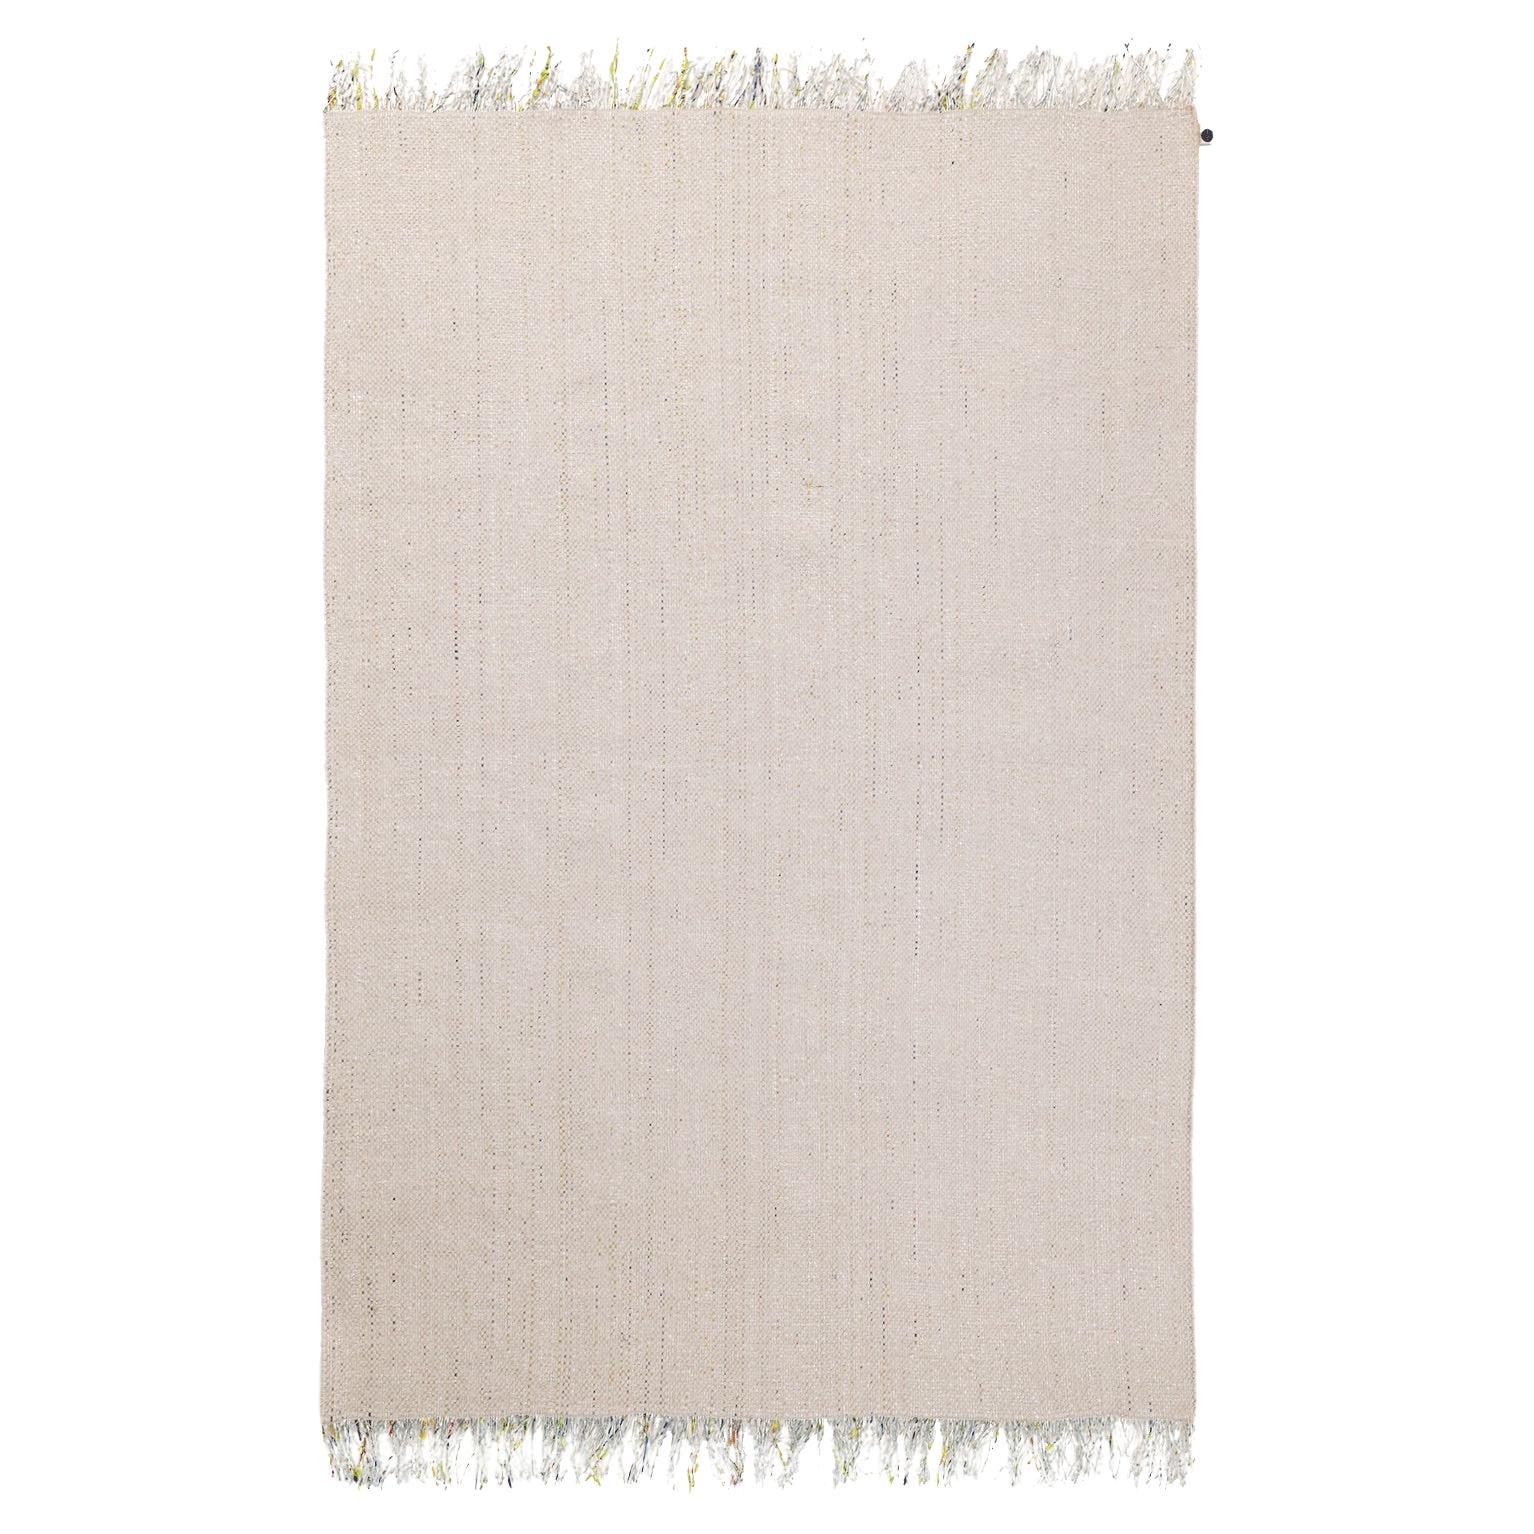 Candy Wrapper Teppich_LivingL_white sand / Preisgekrönter gewebter Teppich von Jutta Werner